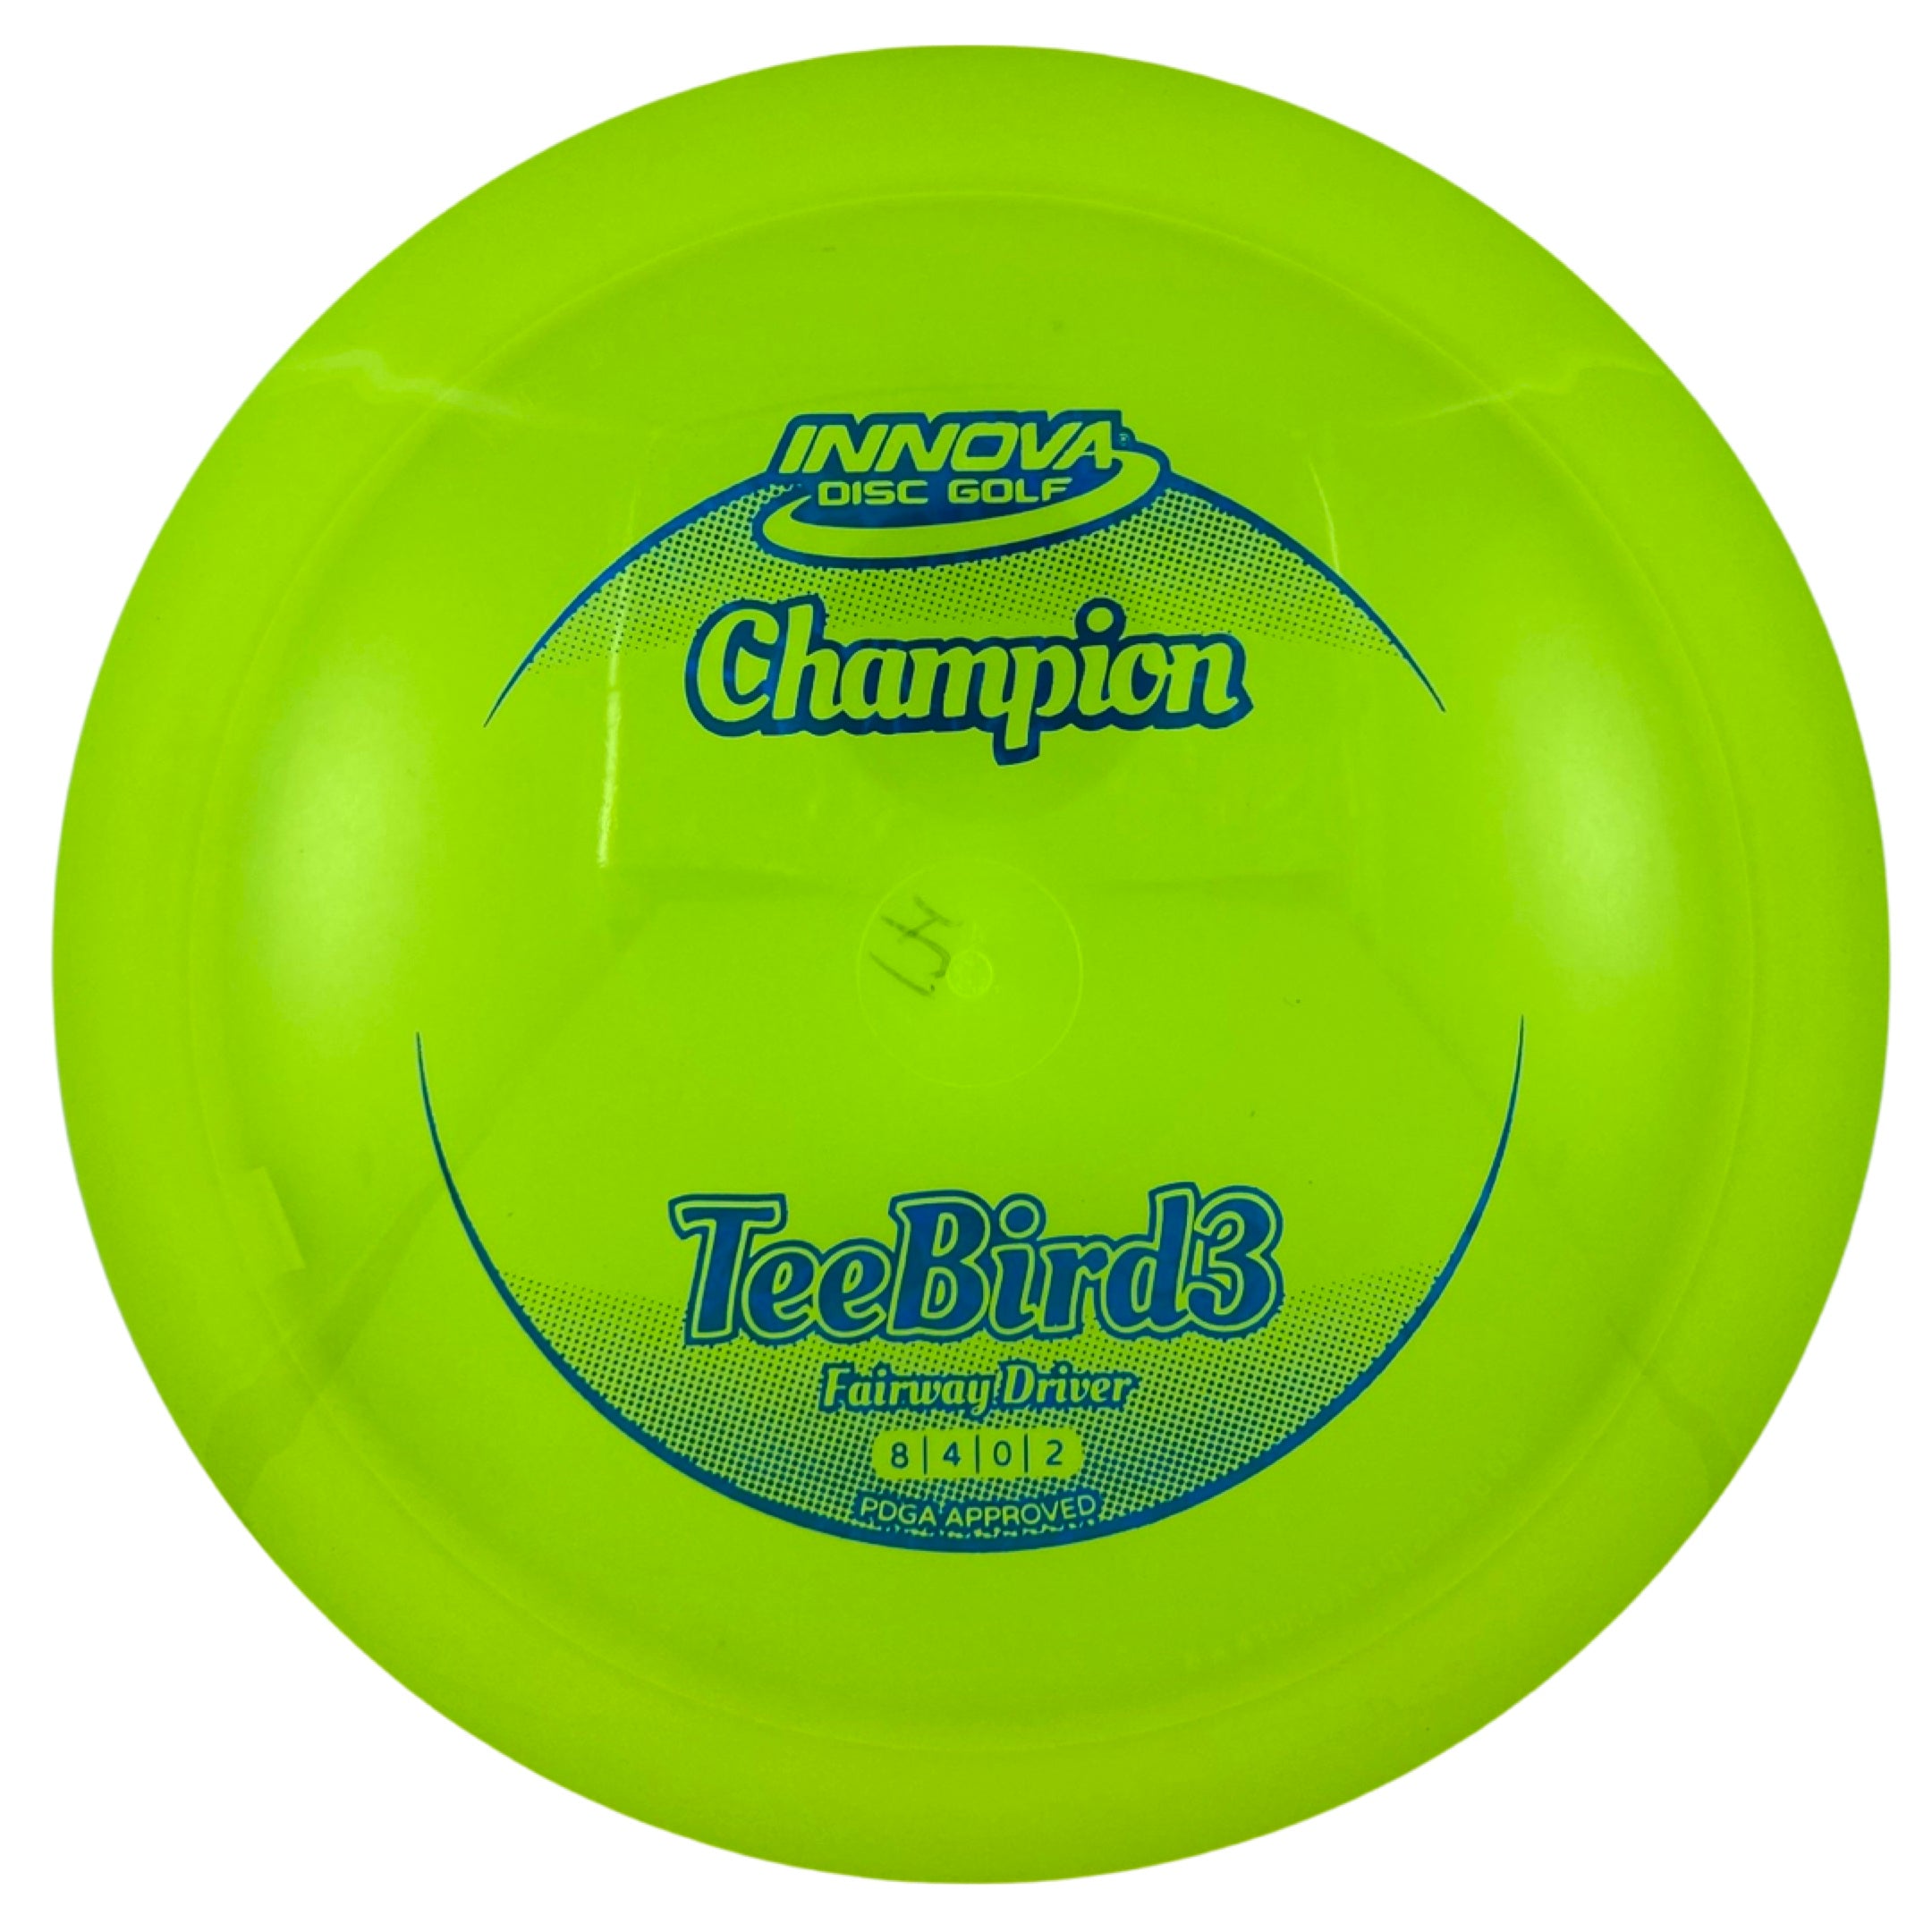 Innova Teebird3 - Champion